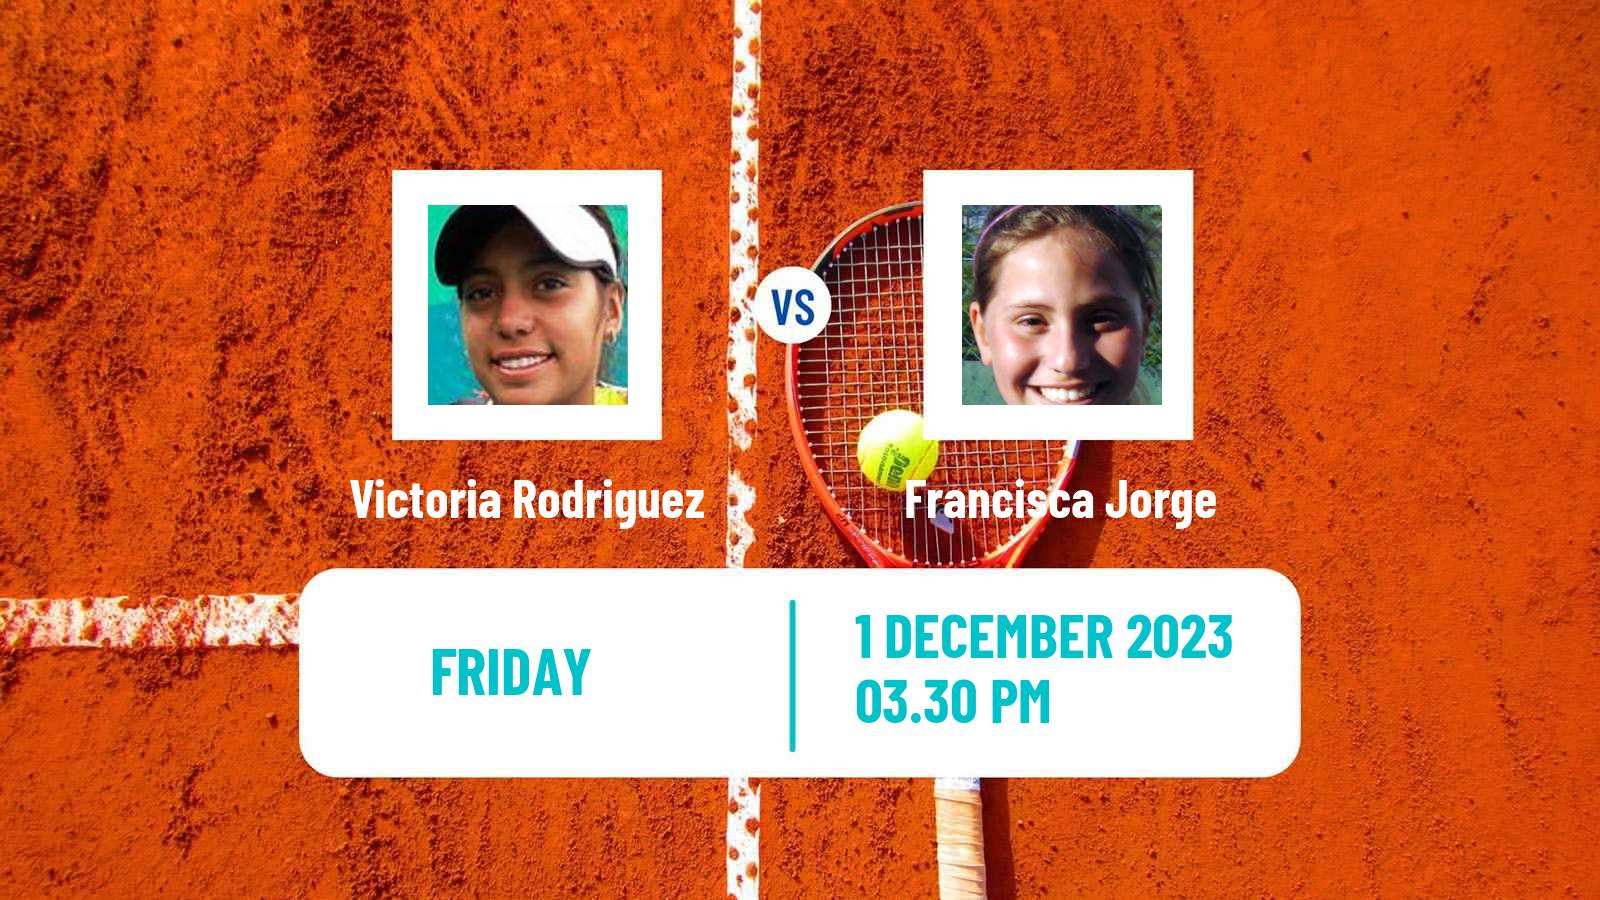 Tennis ITF W40 Veracruz Women Victoria Rodriguez - Francisca Jorge